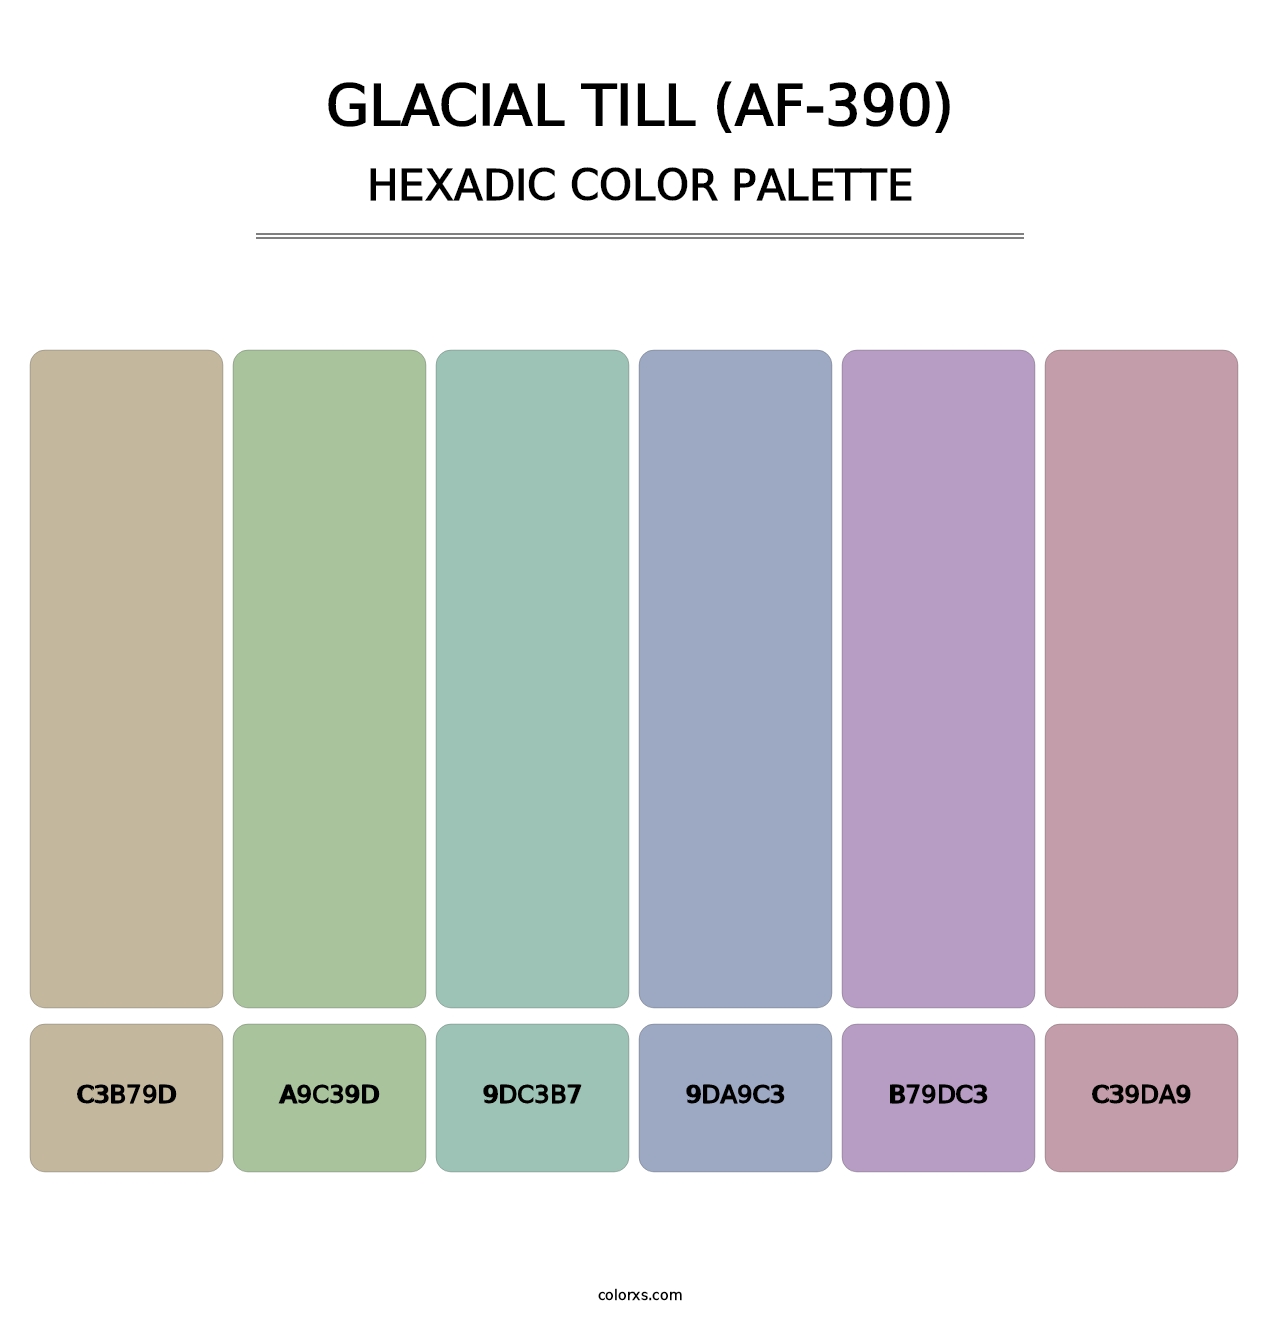 Glacial Till (AF-390) - Hexadic Color Palette